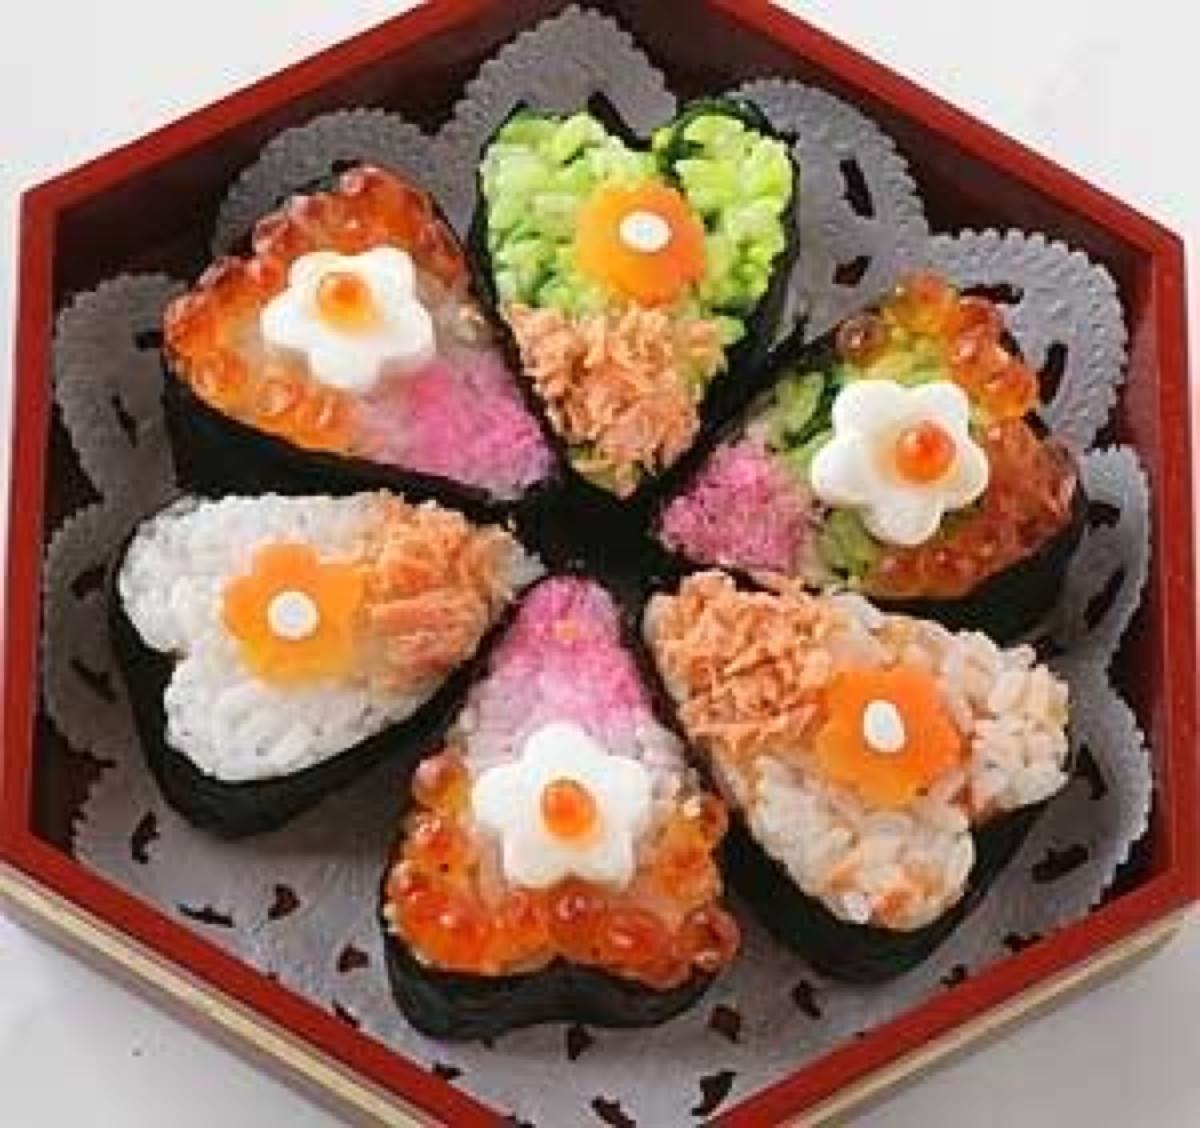 吃日本料理，怎么点寿司才显得懂行？-日本料理店-成为饭局宴请的吃酒品鉴专家-